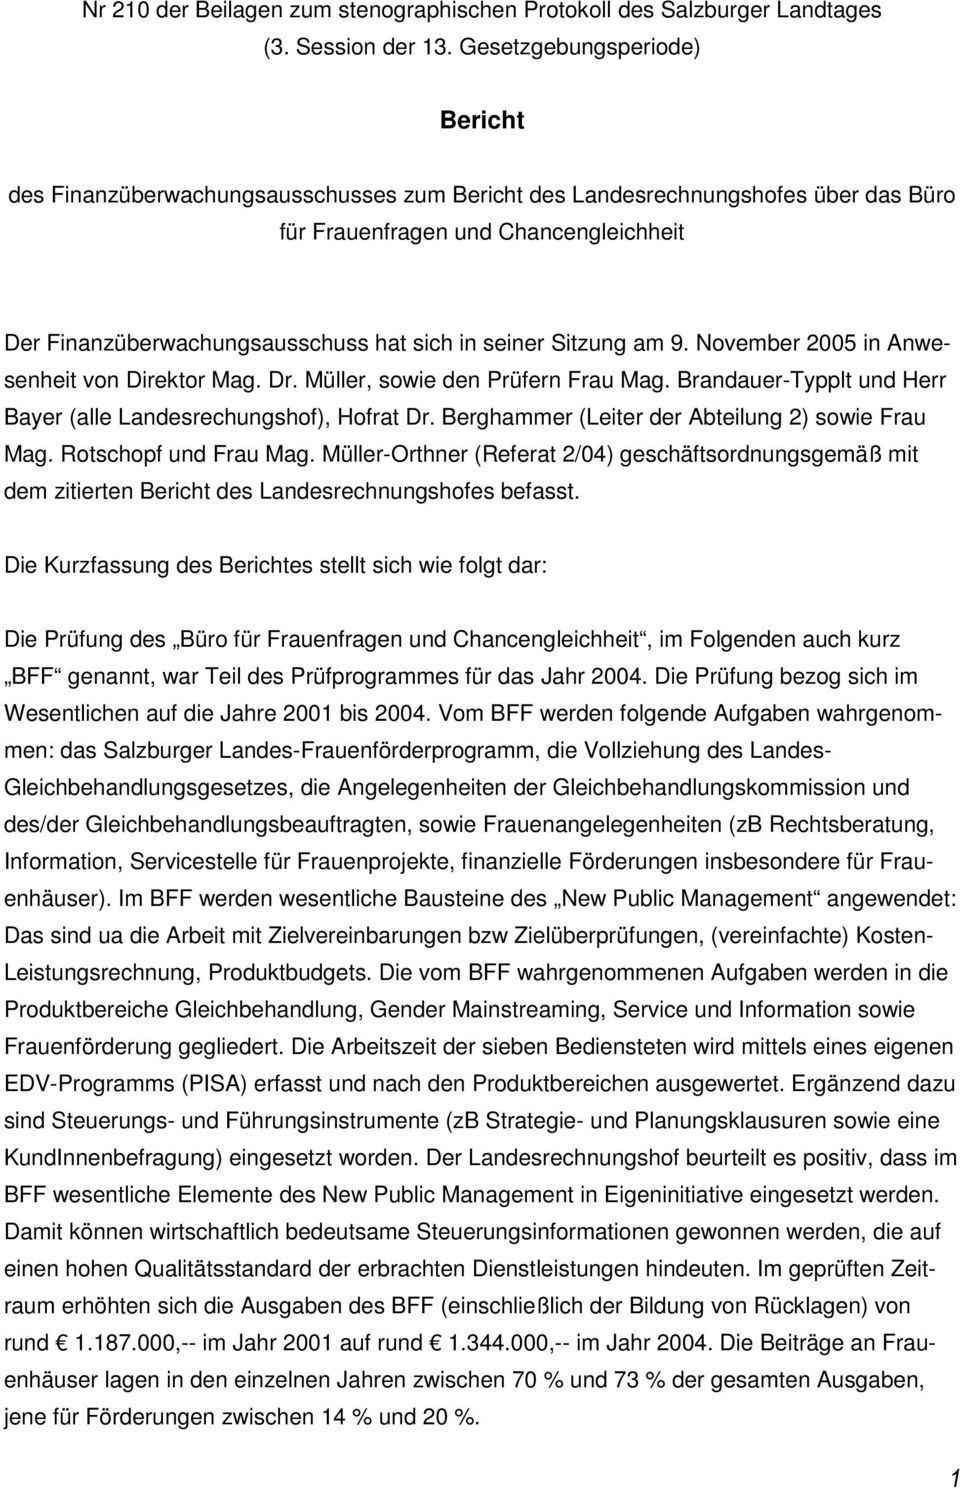 seiner Sitzung am 9. November 2005 in Anwesenheit von Direktor Mag. Dr. Müller, sowie den Prüfern Frau Mag. Brandauer-Typplt und Herr Bayer (alle Landesrechungshof), Hofrat Dr.